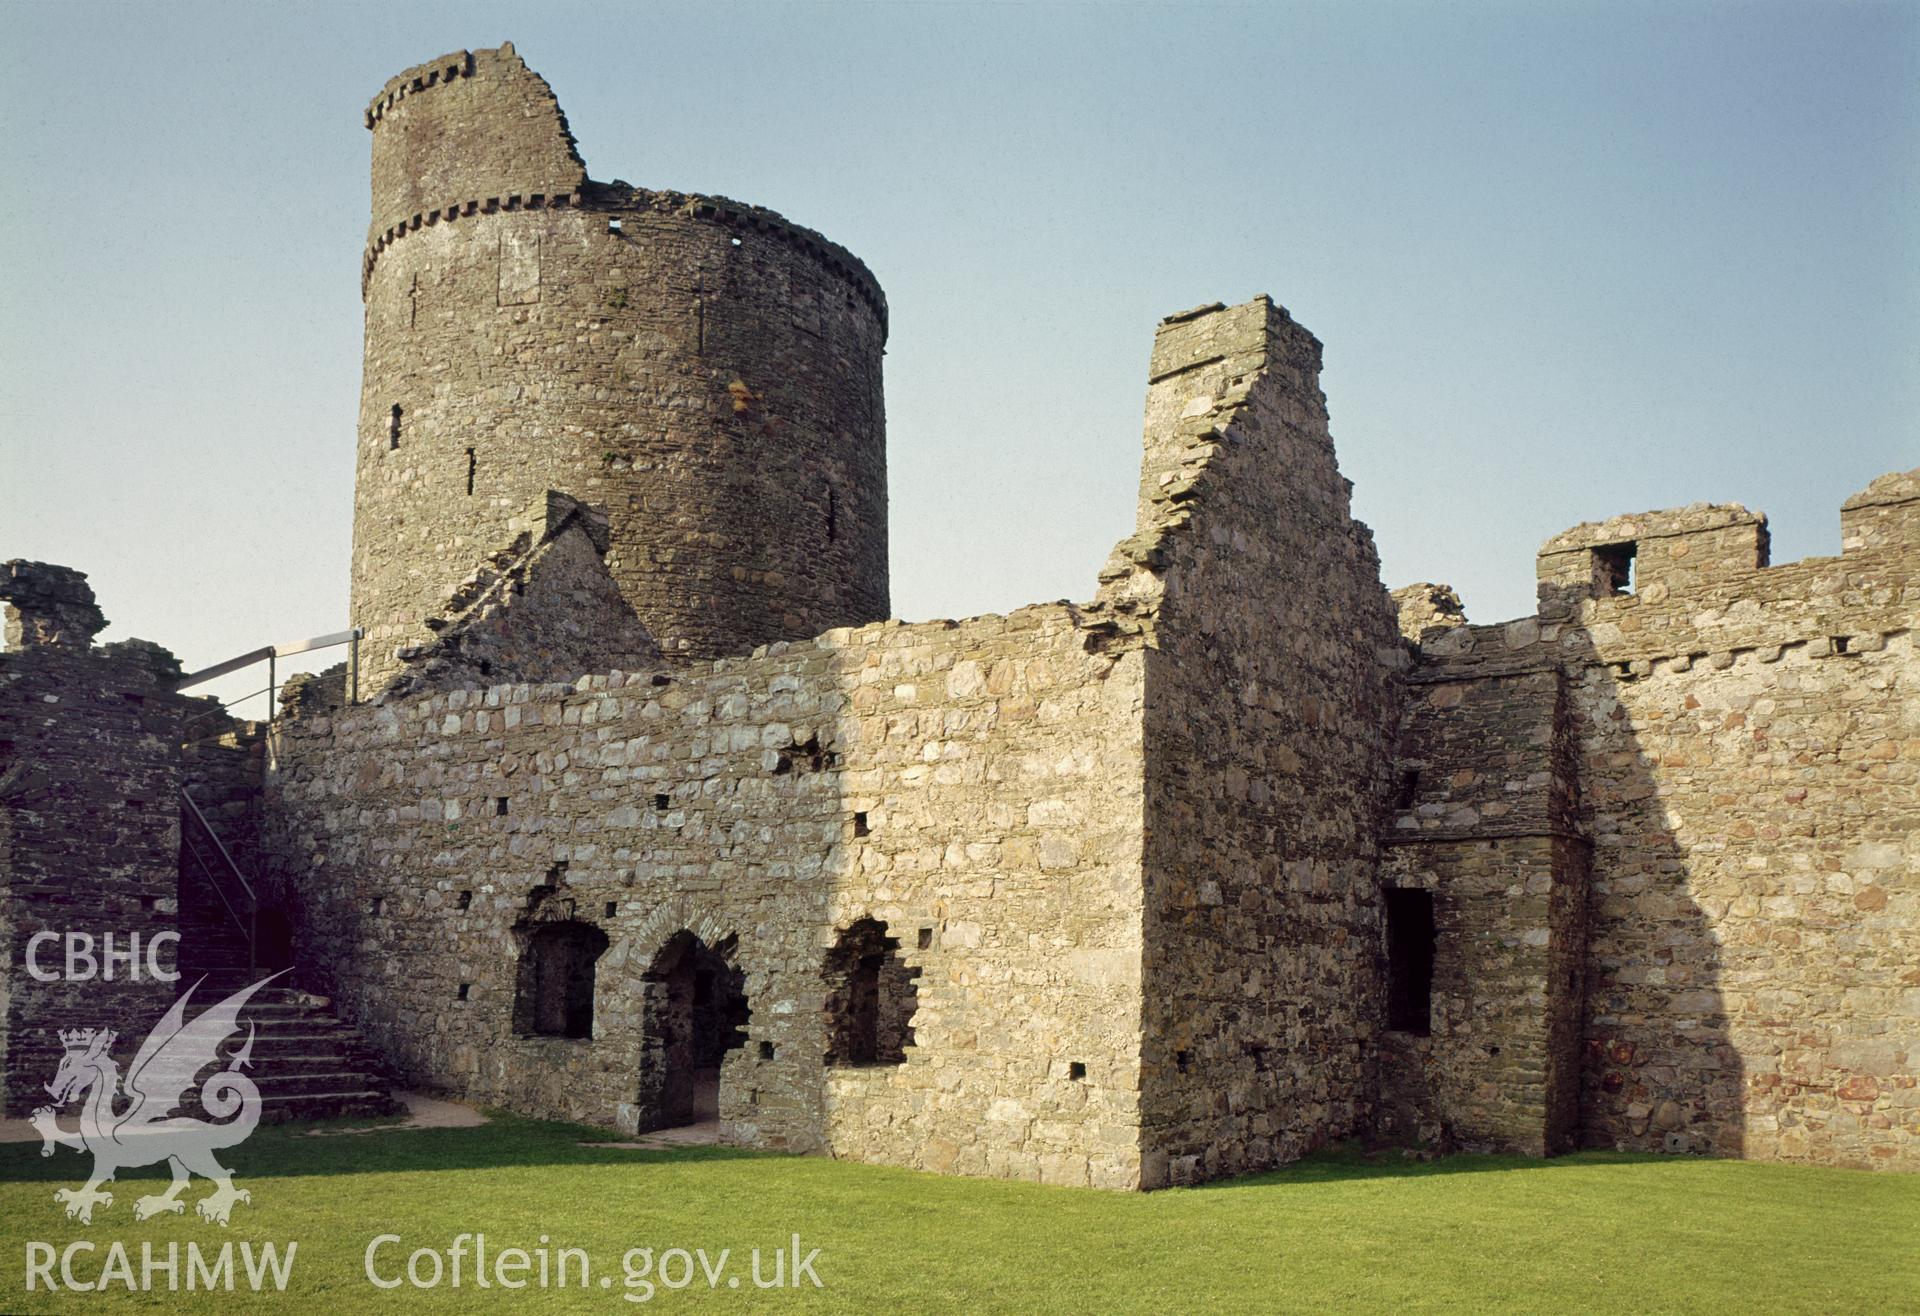 View of Kidwelly Castle taken in 1976.